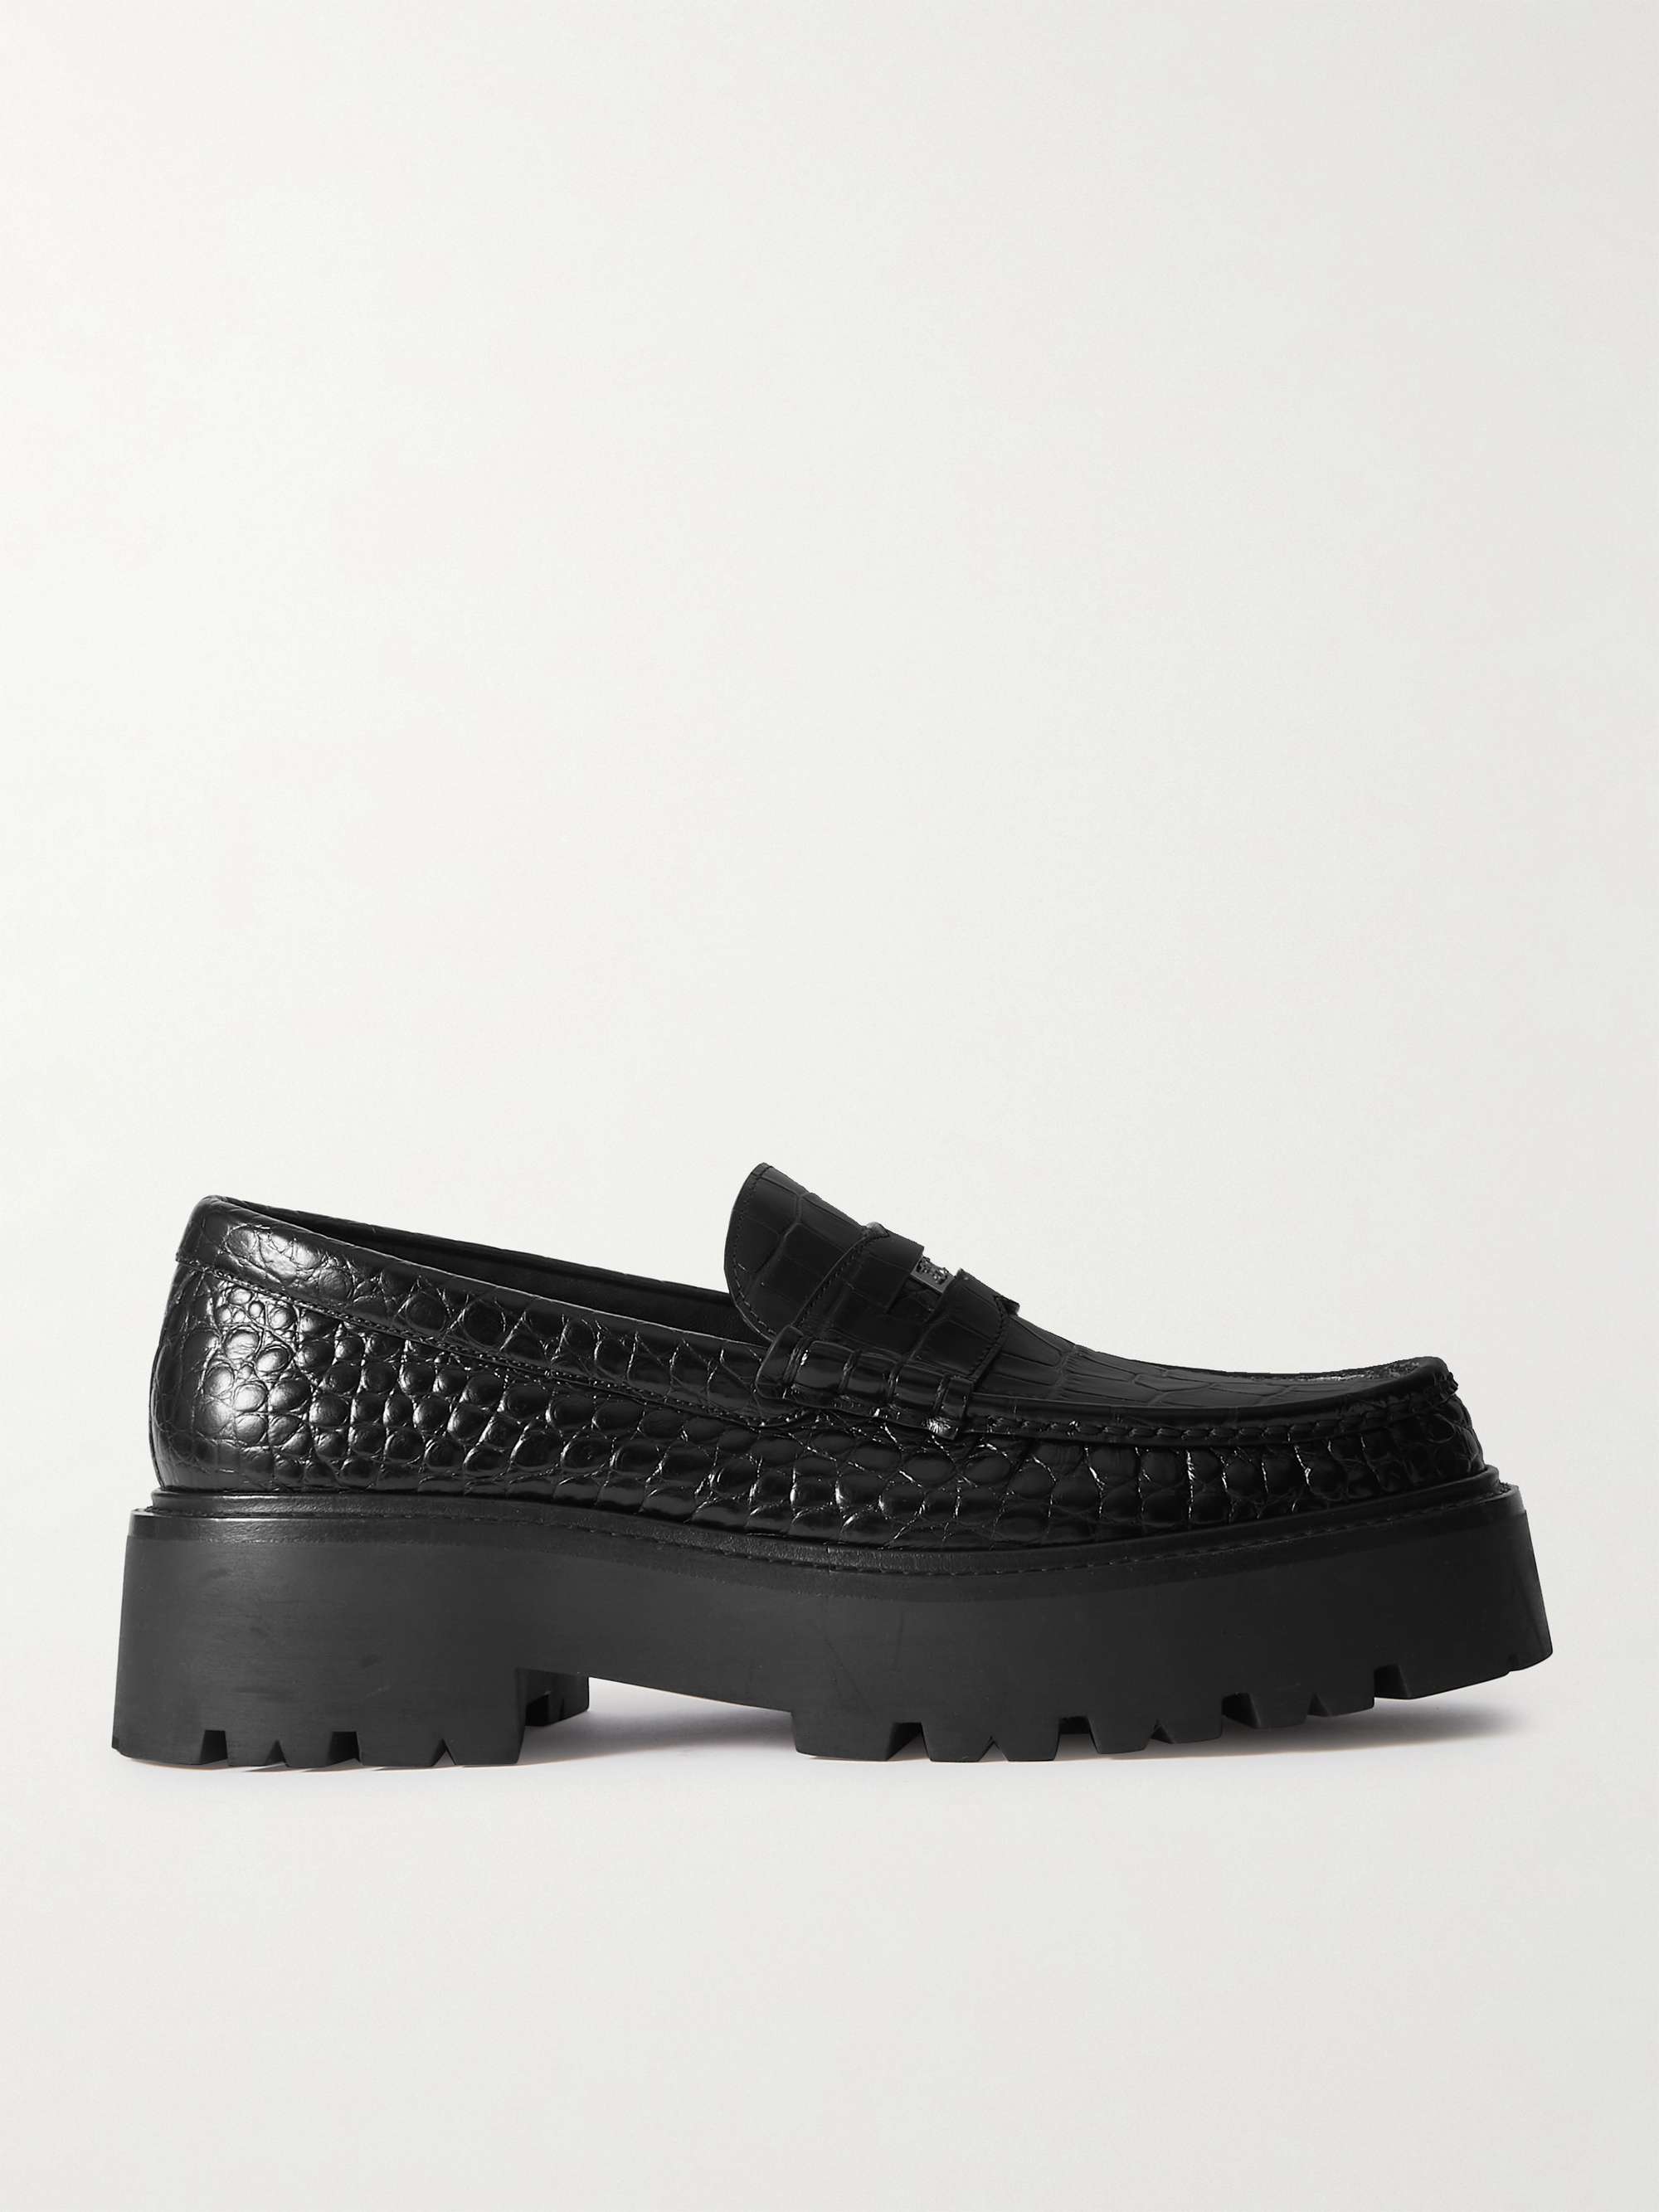 CELINE HOMME Croc-Effect Leather Penny Loafers for Men | MR PORTER